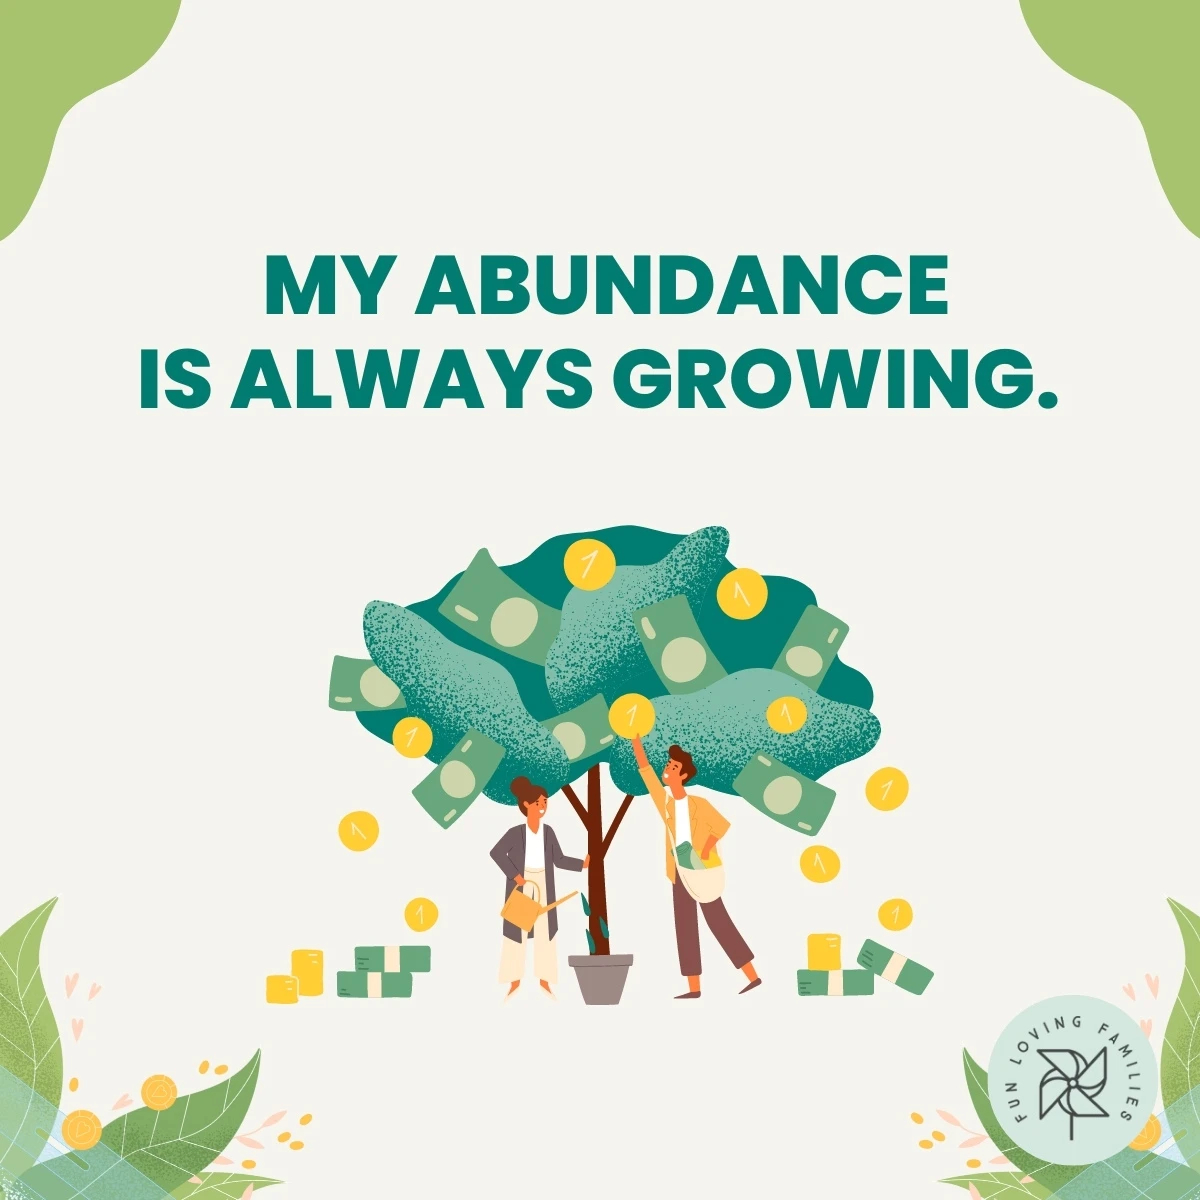 My abundance is always growing affirmation